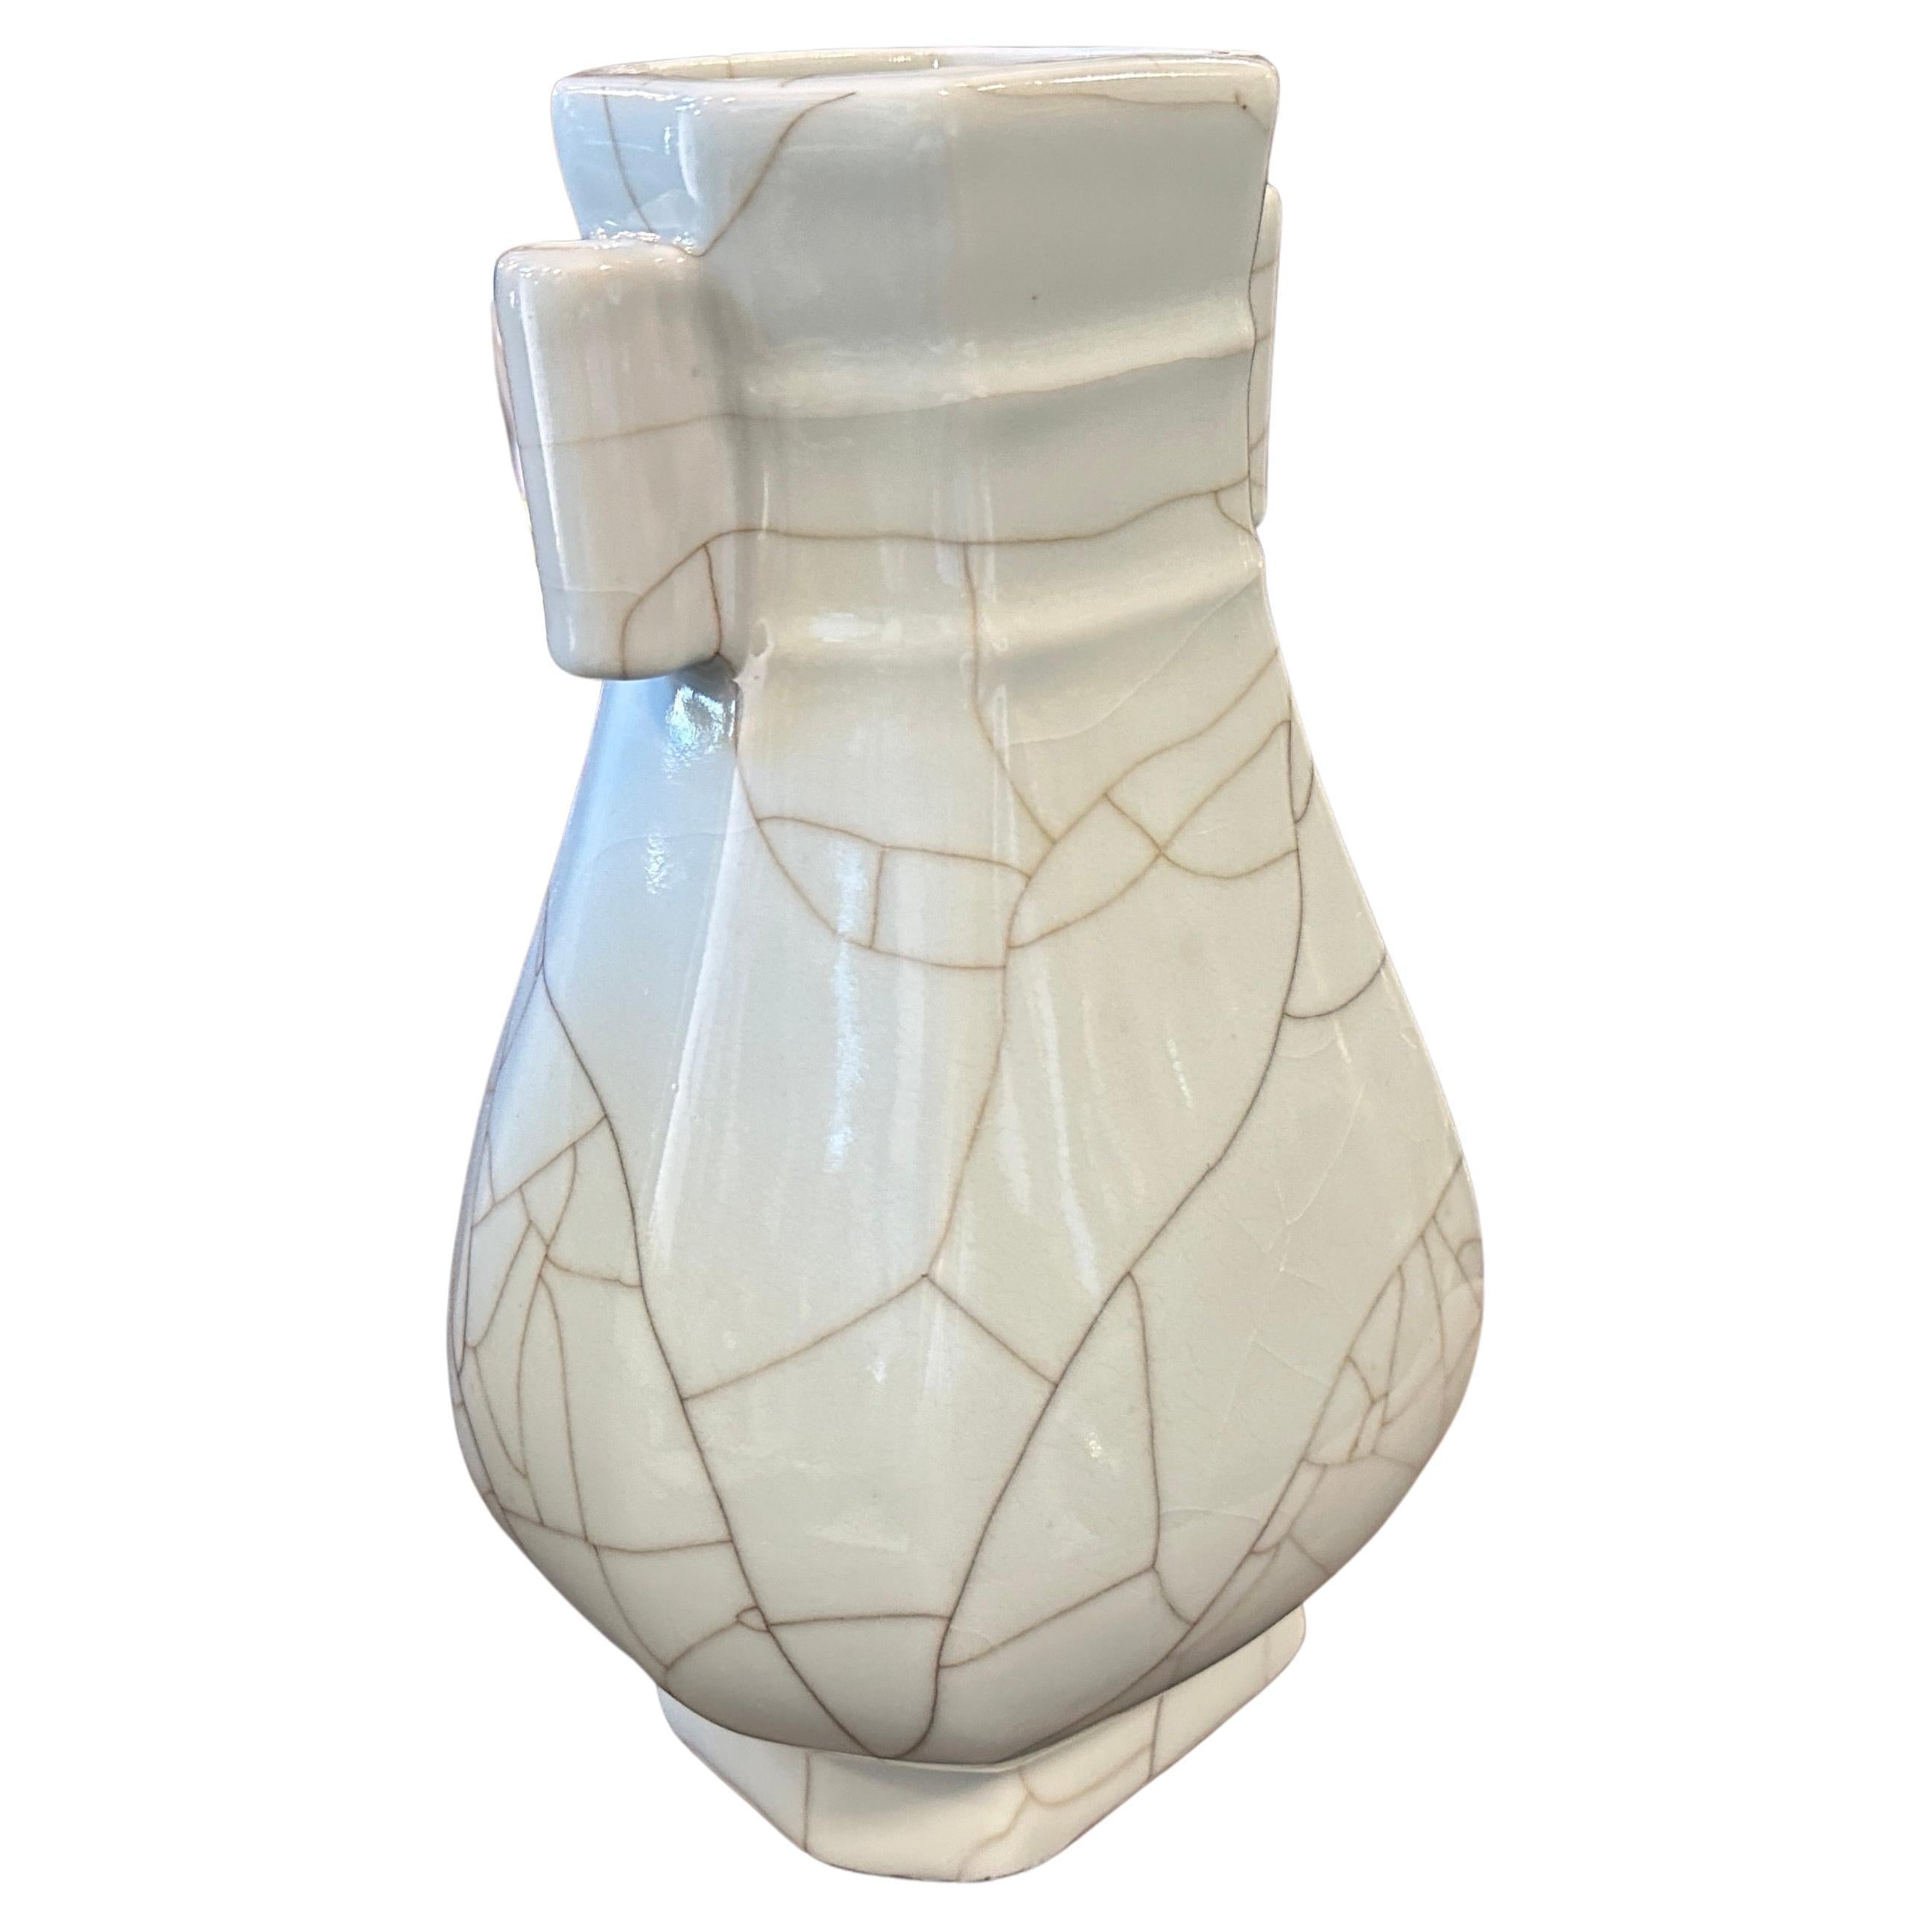 Eine einfache und elegante, wohlgeformte Celadon-Vase, die im späten 19. Jahrhundert in China hergestellt wurde. Die Vase ist insgesamt mit einer grauen Celadon-Glasur mit Craquelé überzogen. Die Glasur ist glatt und gleichmäßig, mit einem leichten